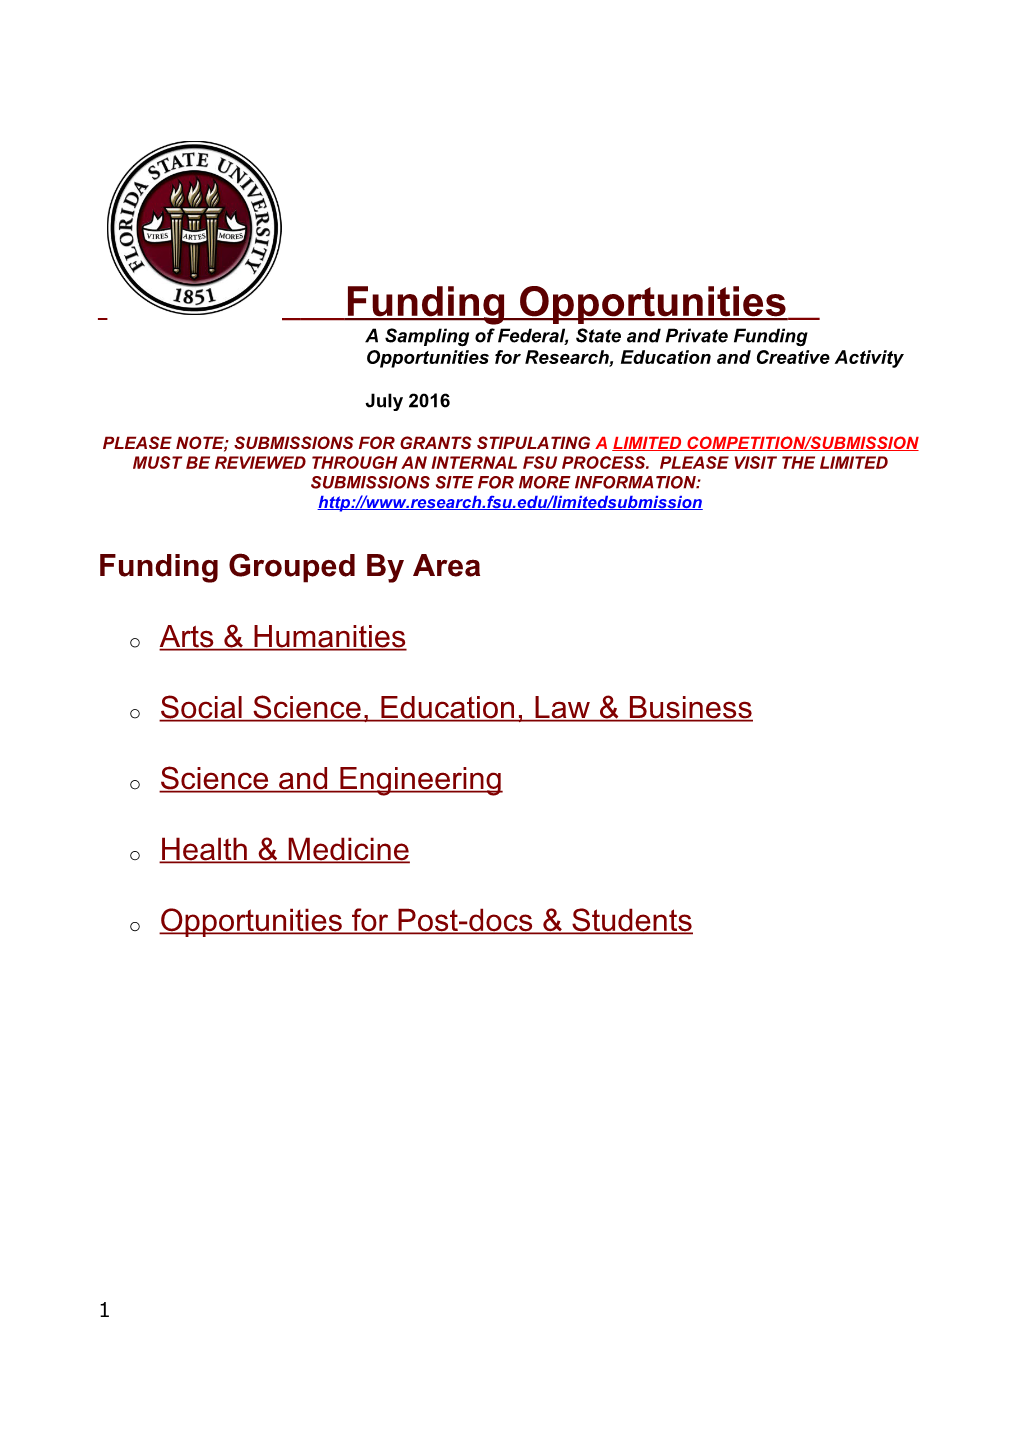 Funding Opportunities s1